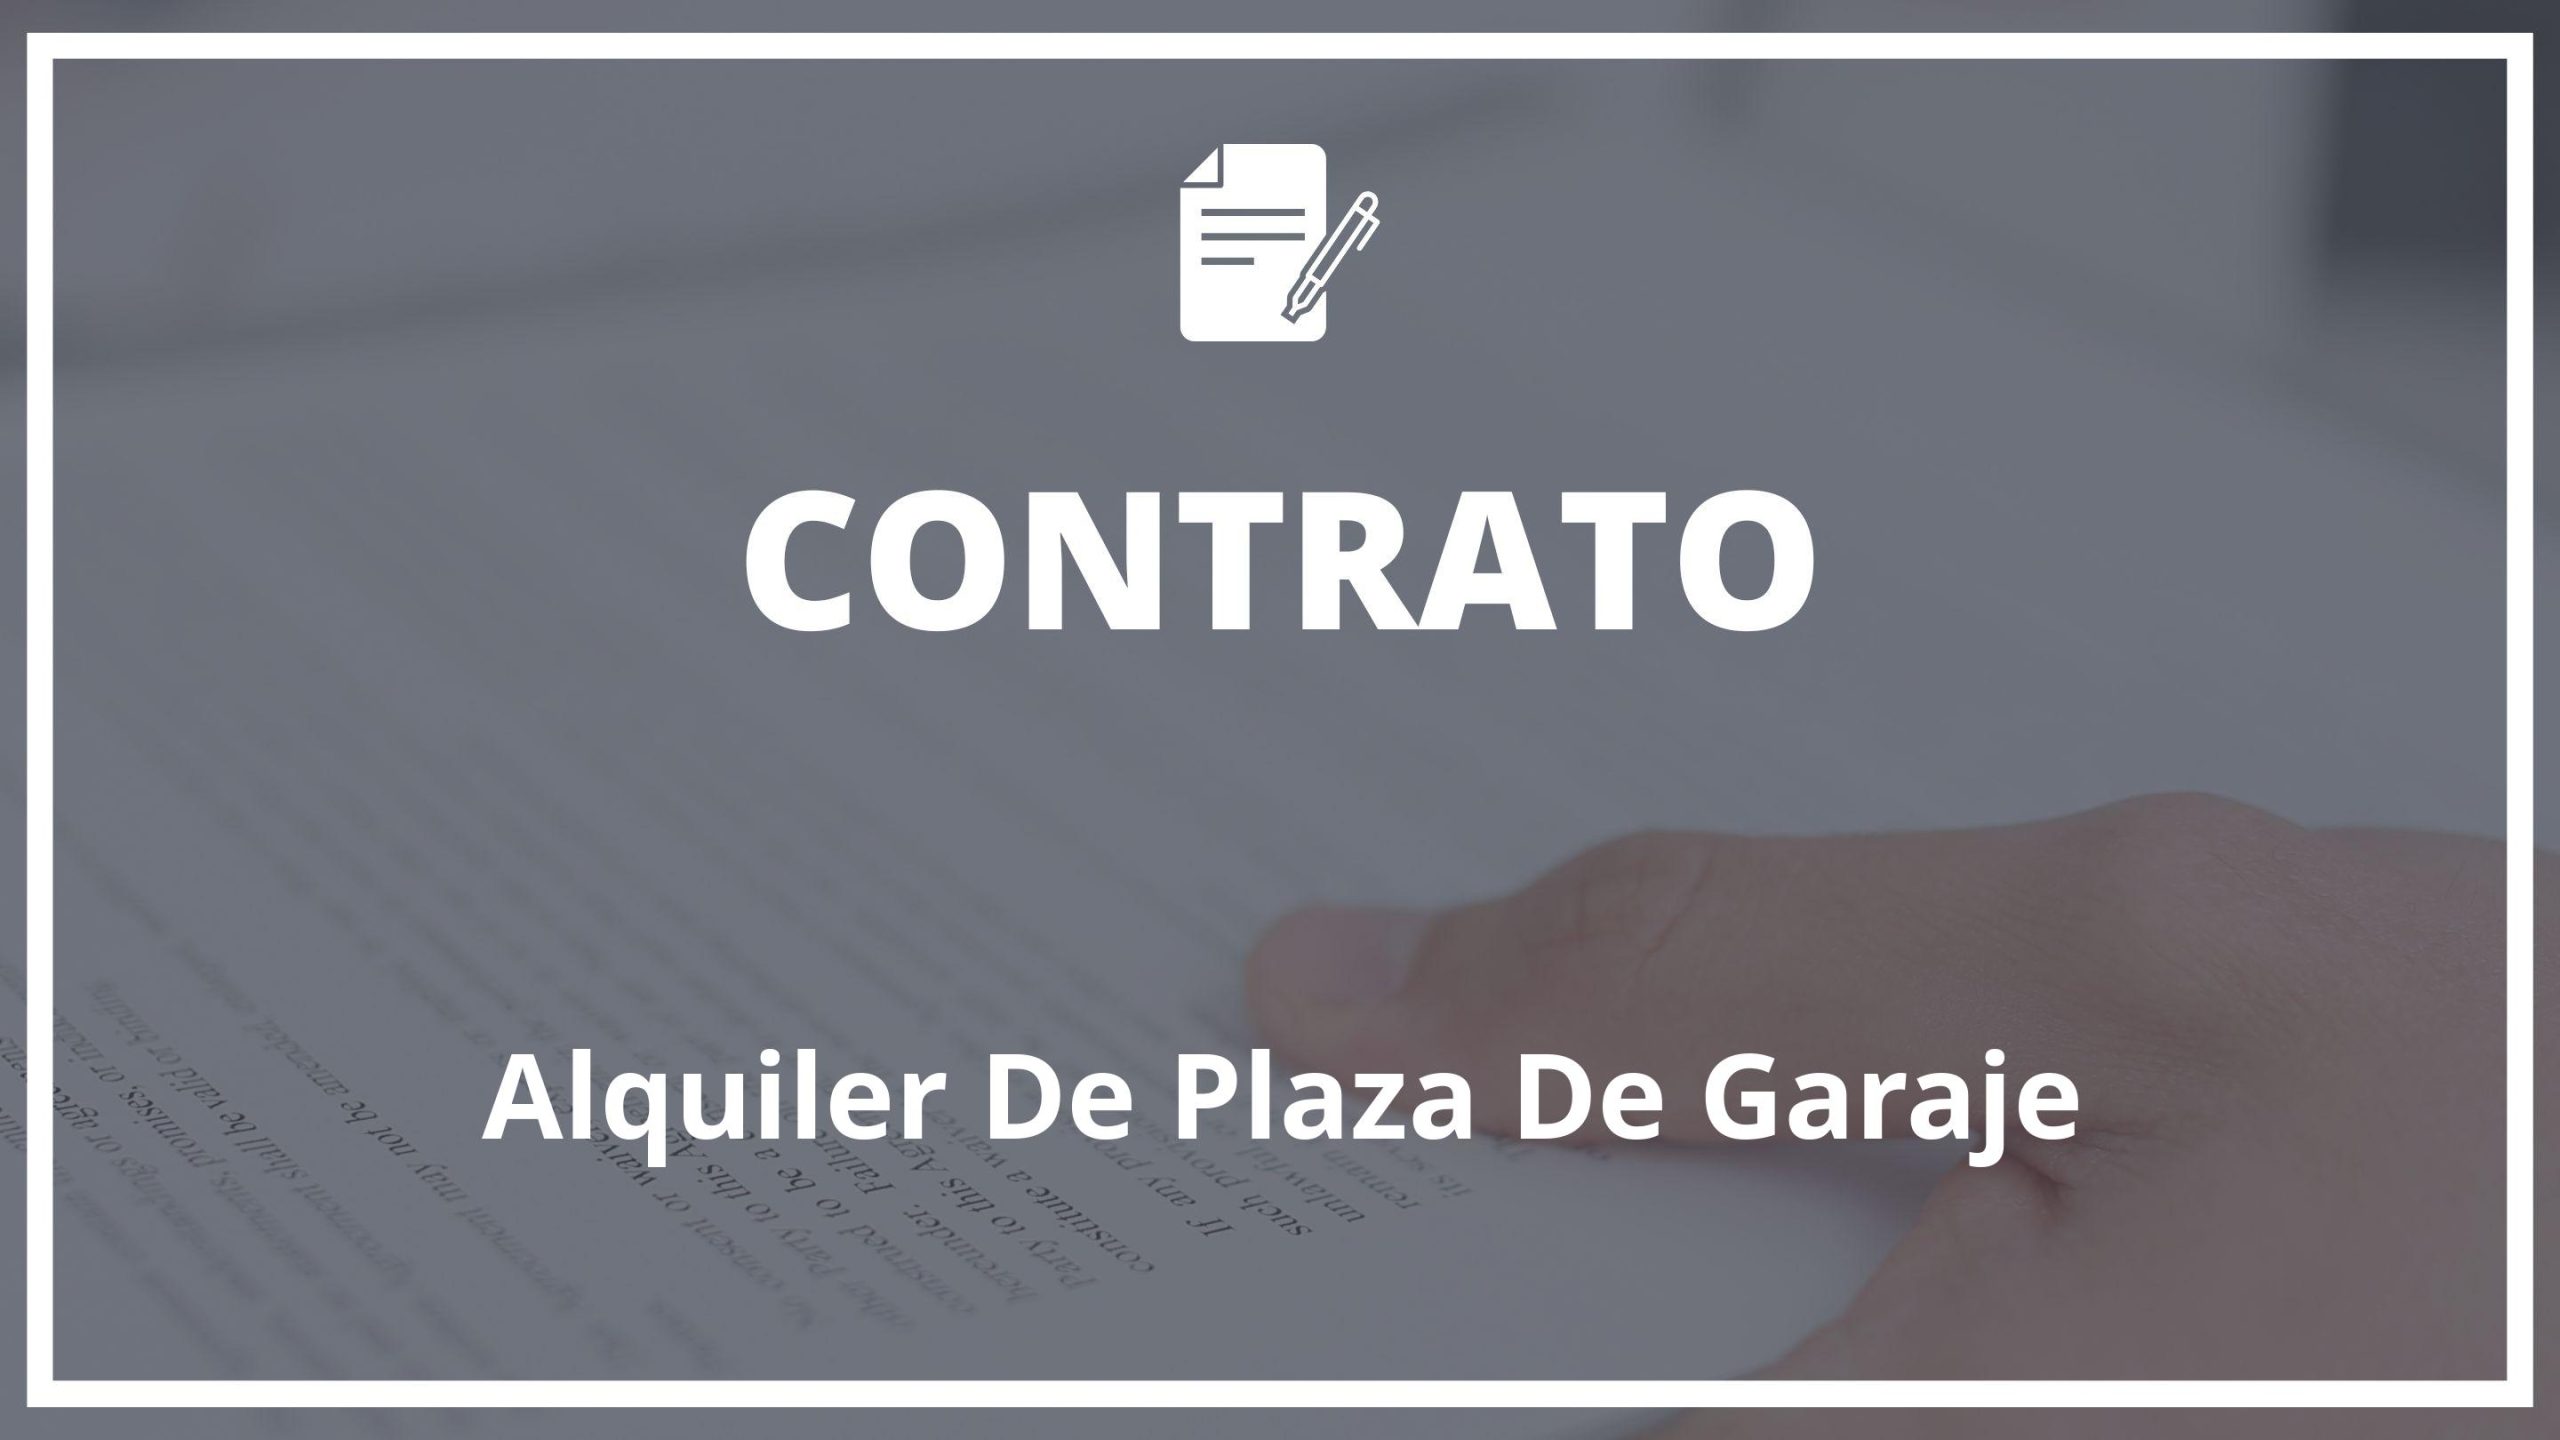 Modelo Contrato De Alquiler De Plaza De Garaje Dailyjobs 3728